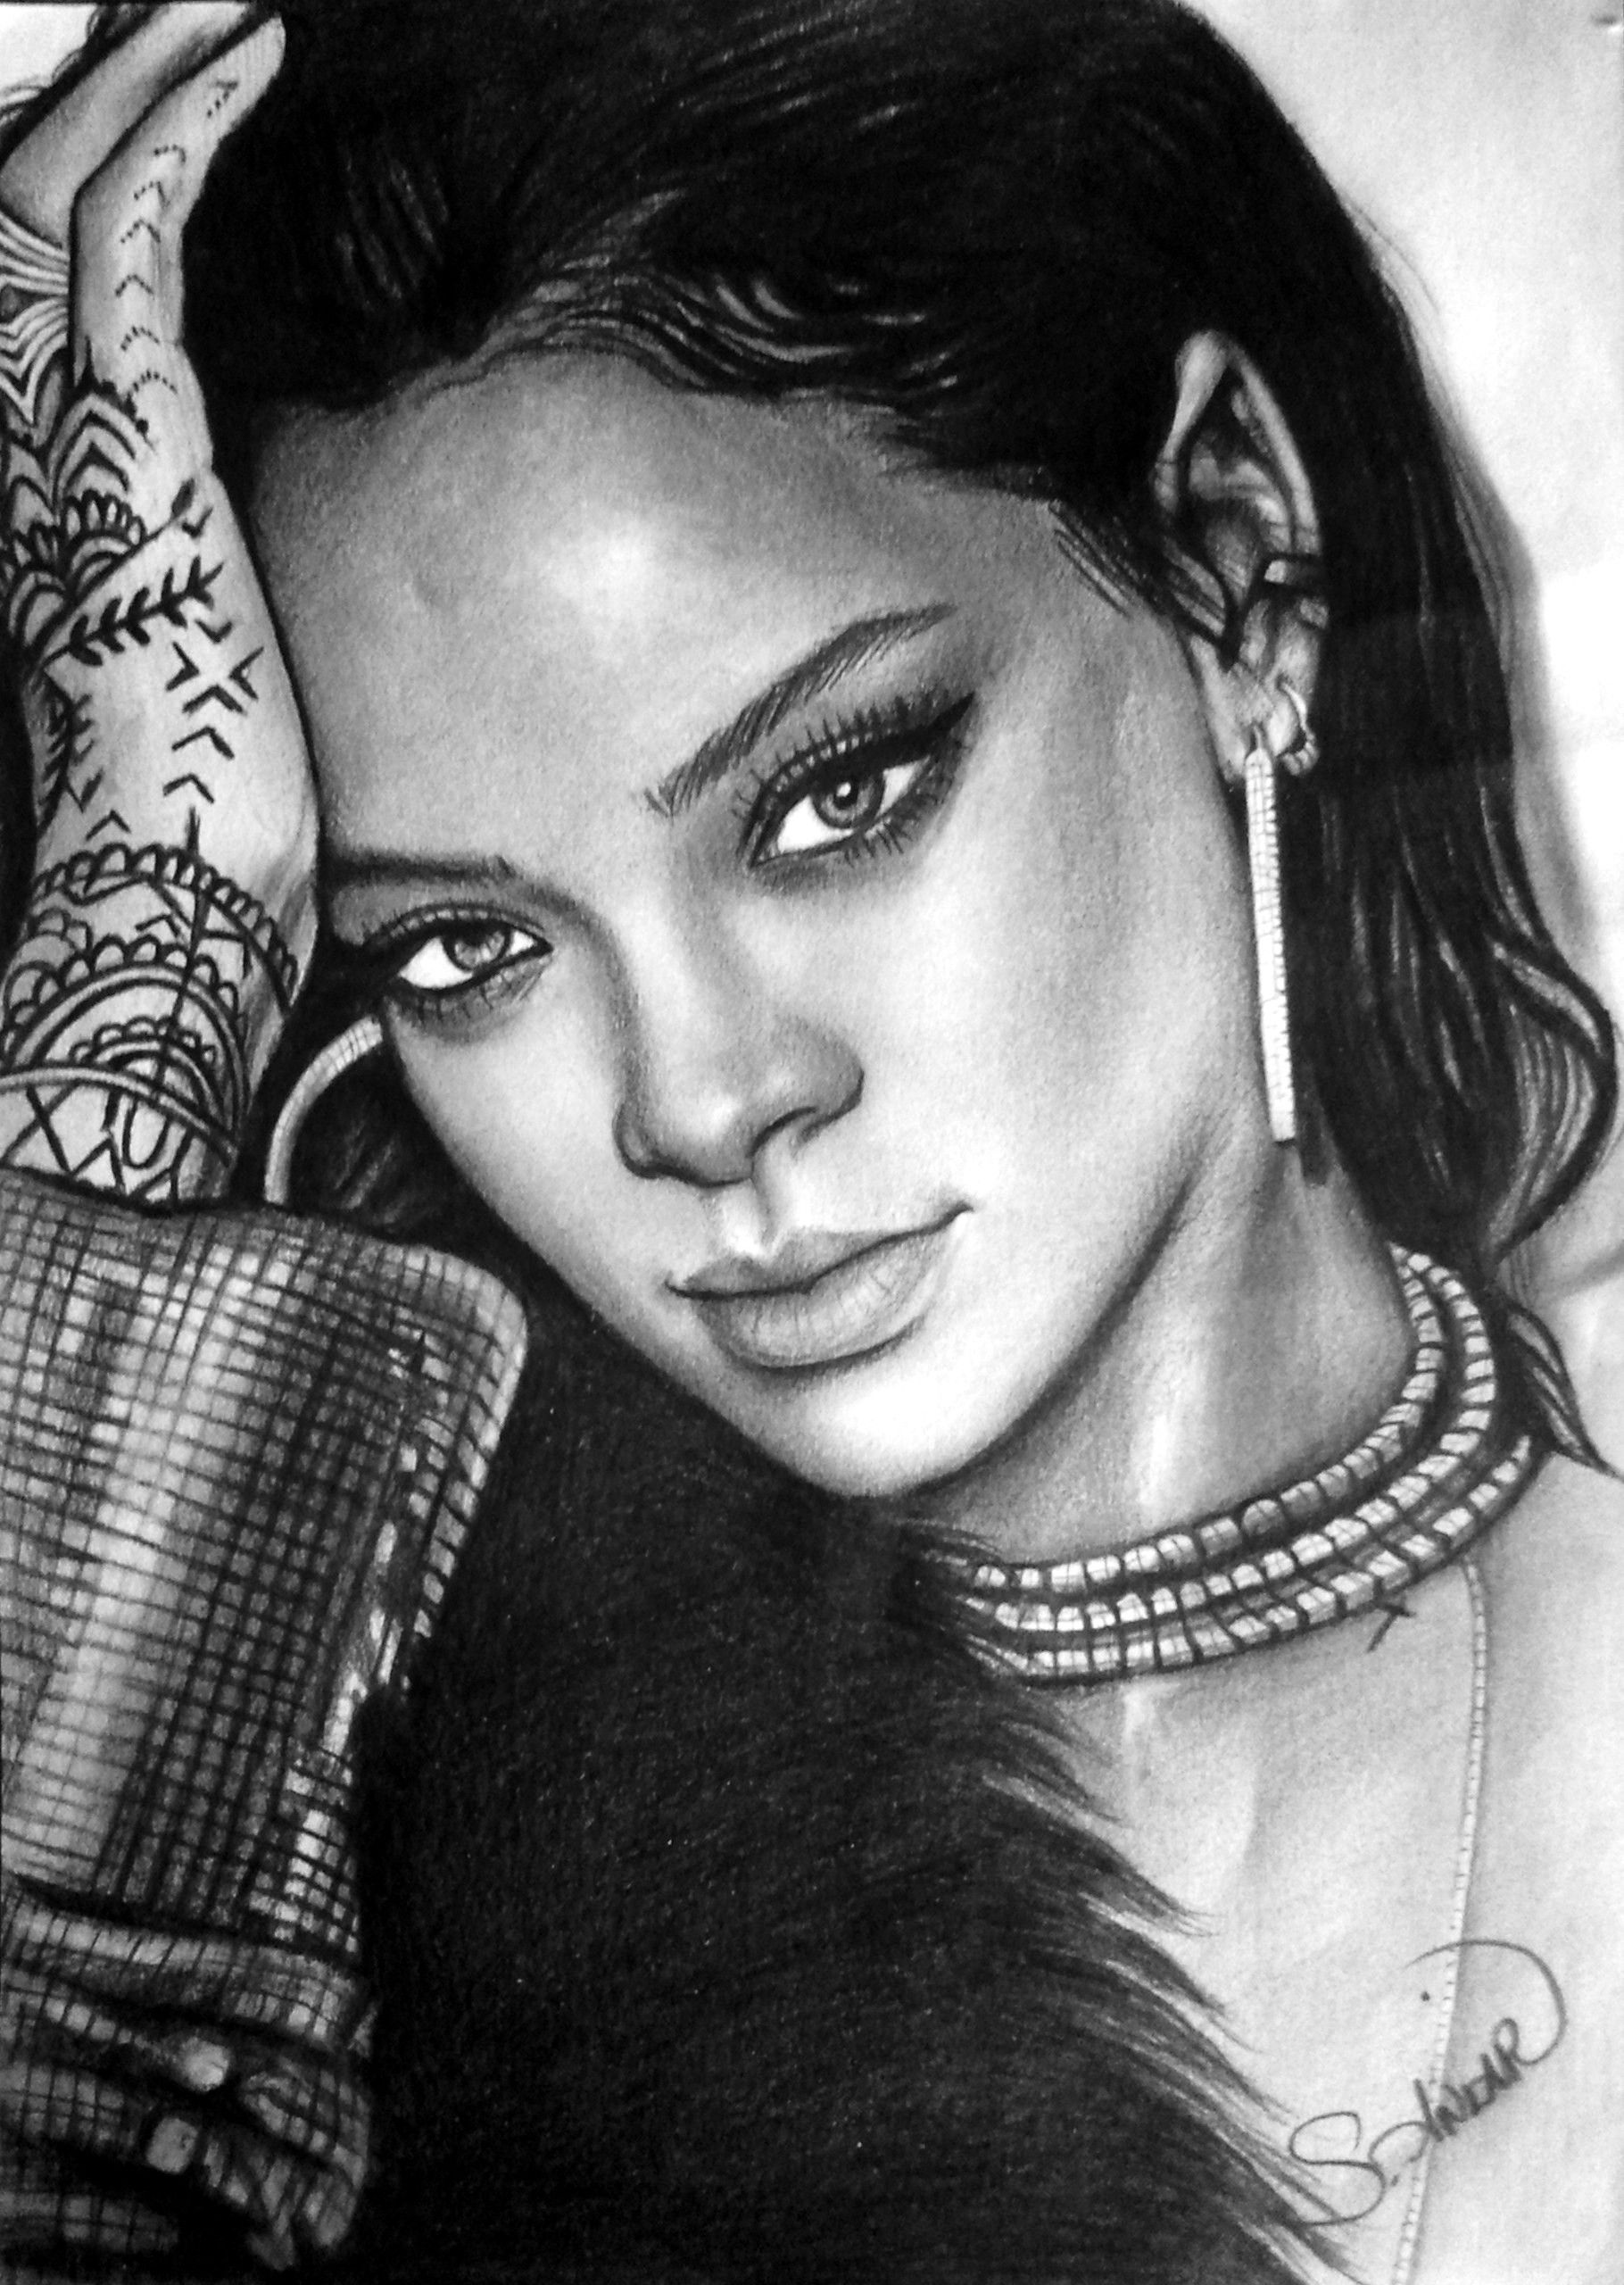 Rihanna Drawing at Explore collection of Rihanna